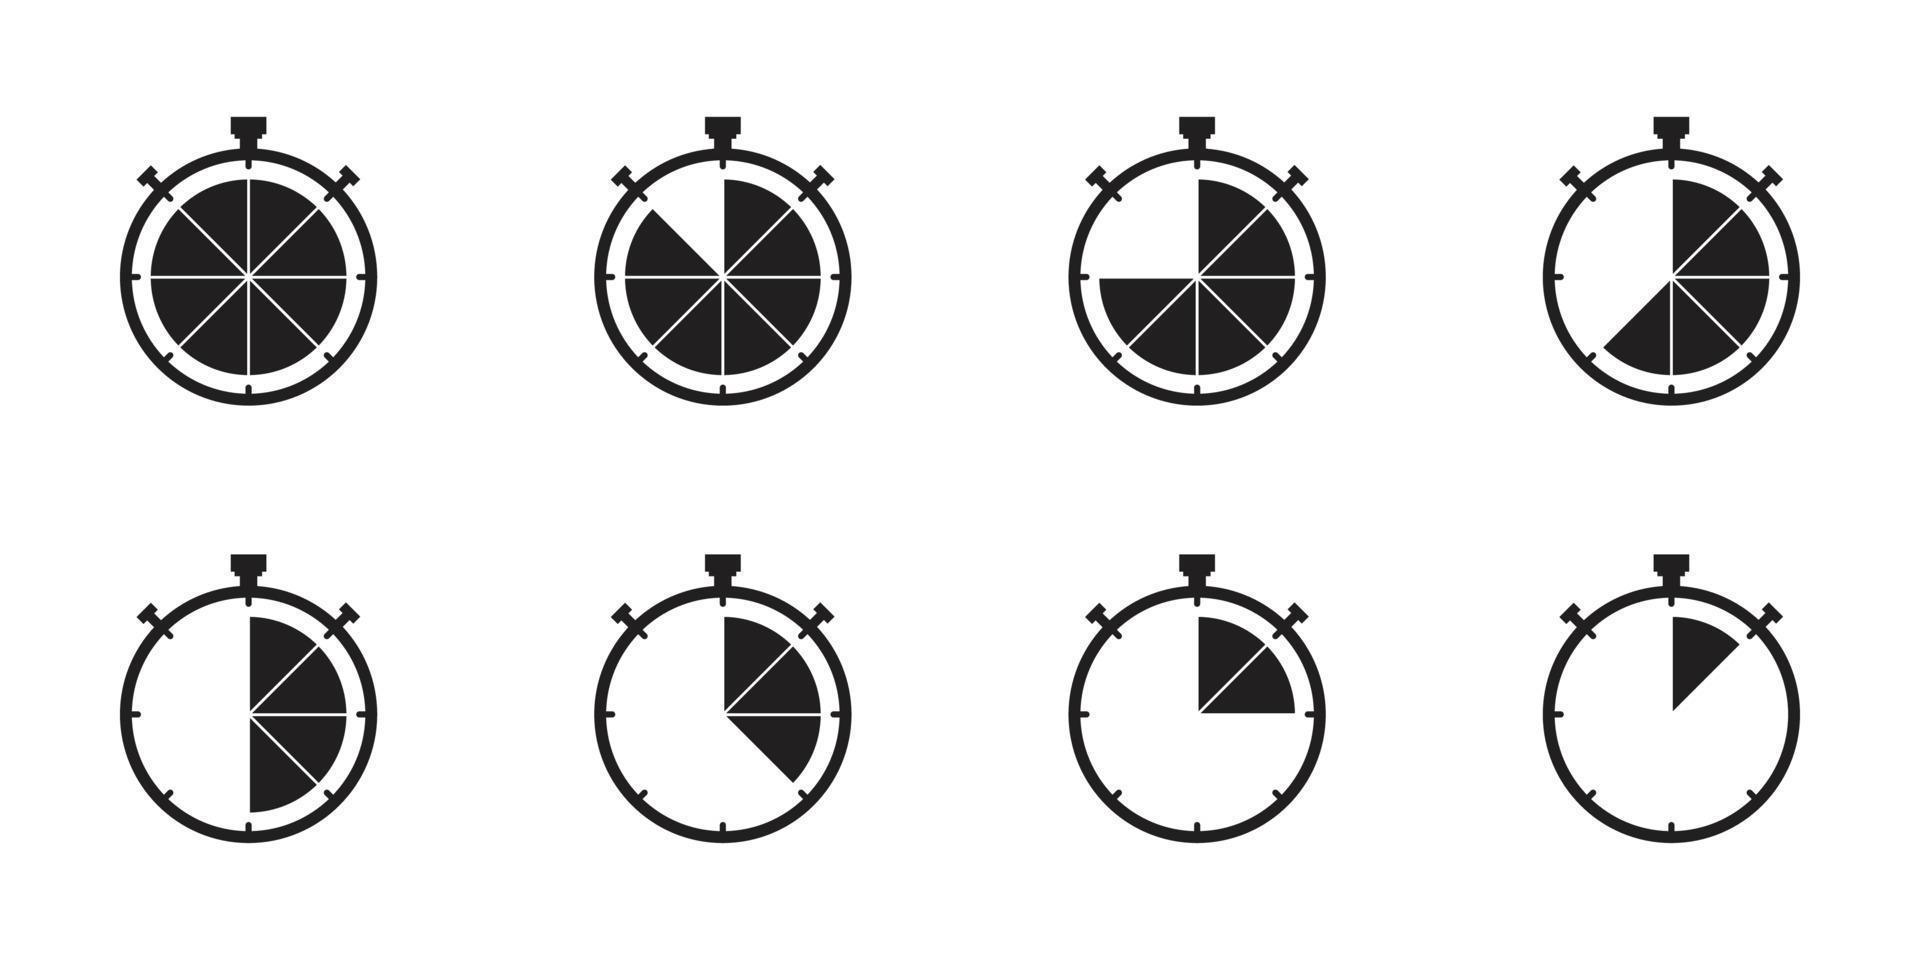 ligne de vecteur d'icône de chronomètre d'horloge sur l'image de fond blanc pour le web, la présentation, le logo, le symbole d'icône.